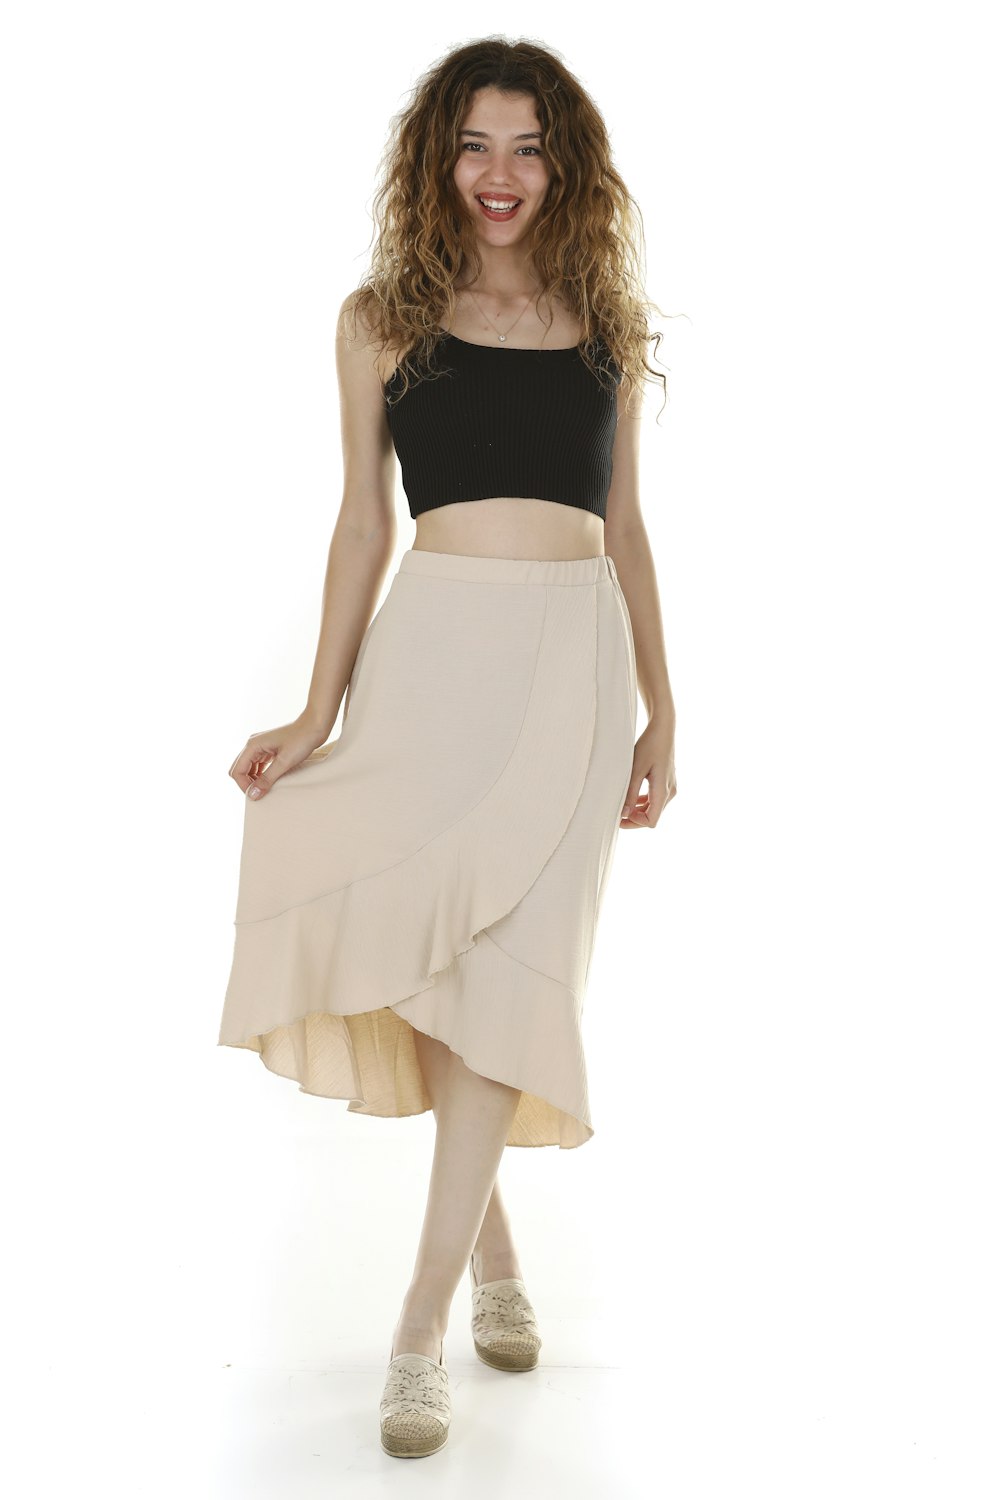 Foto Una mujer con sudadera negra y falda blanca – Imagen Tx gratis en  Unsplash